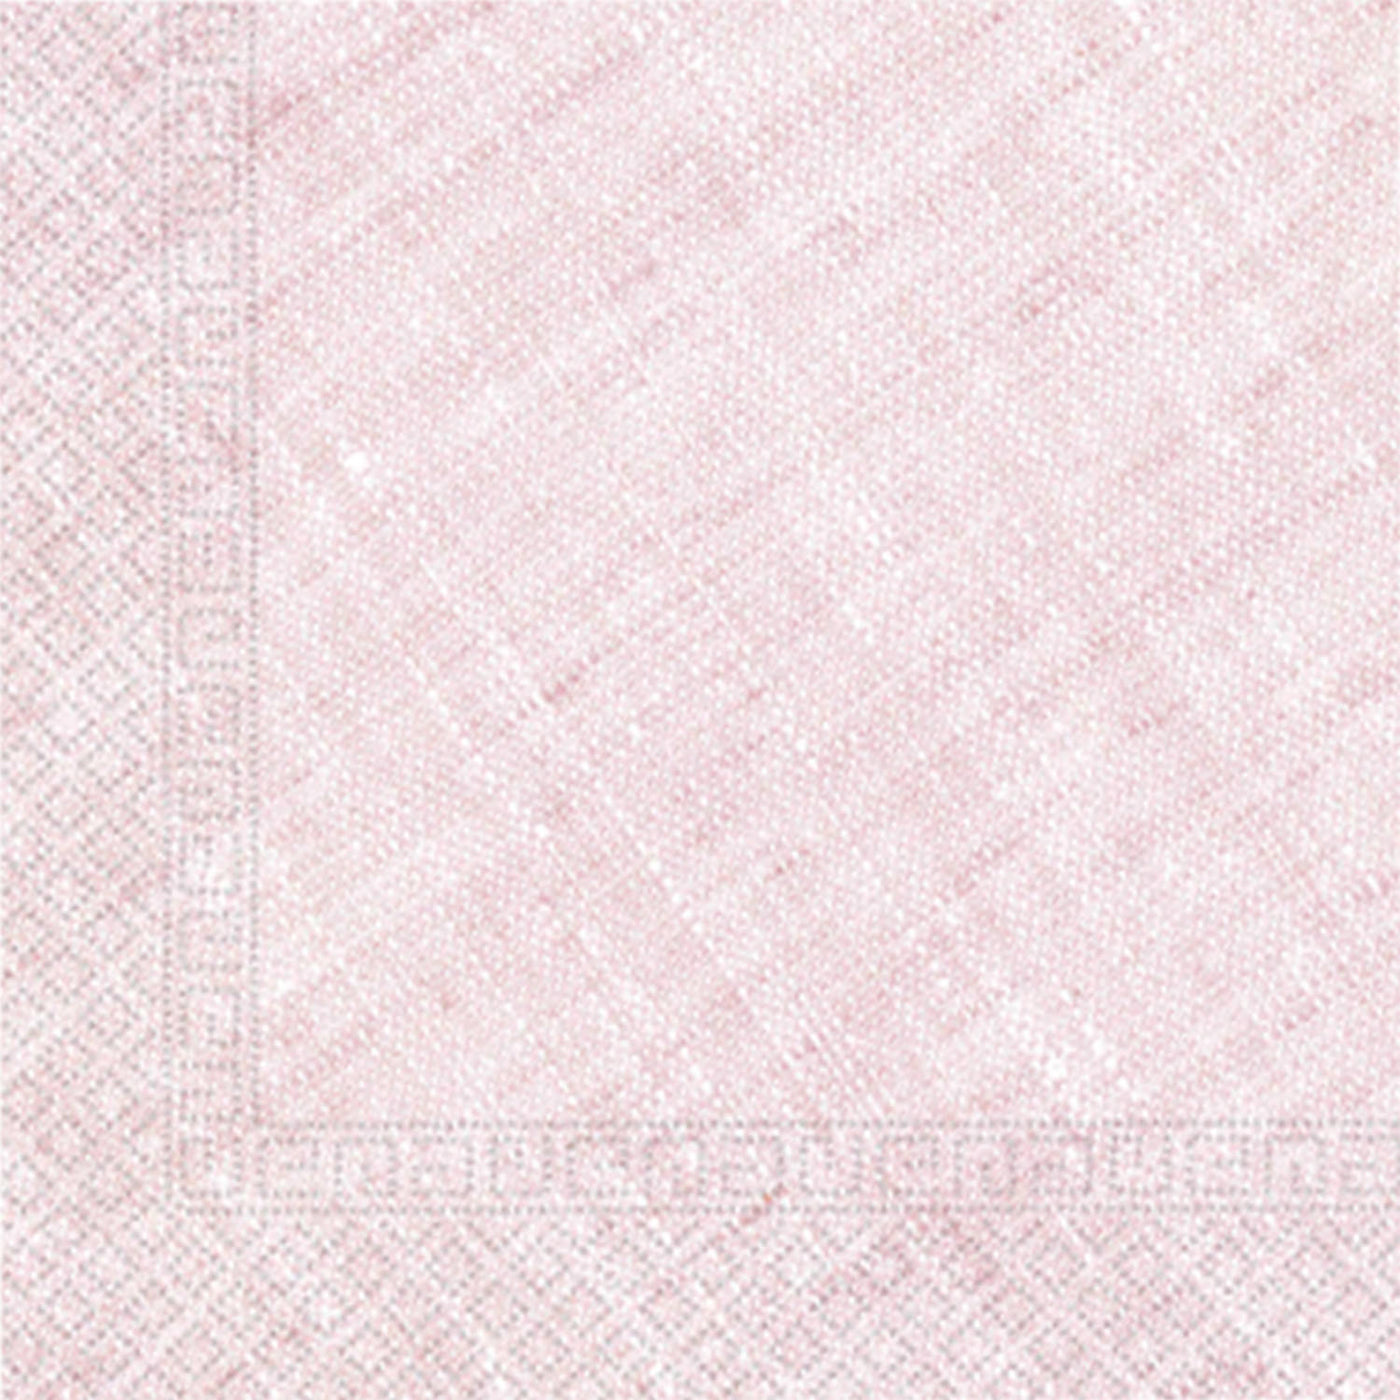 Servietten Pink, 20 Stk., 33x33 cm, kompostierbar